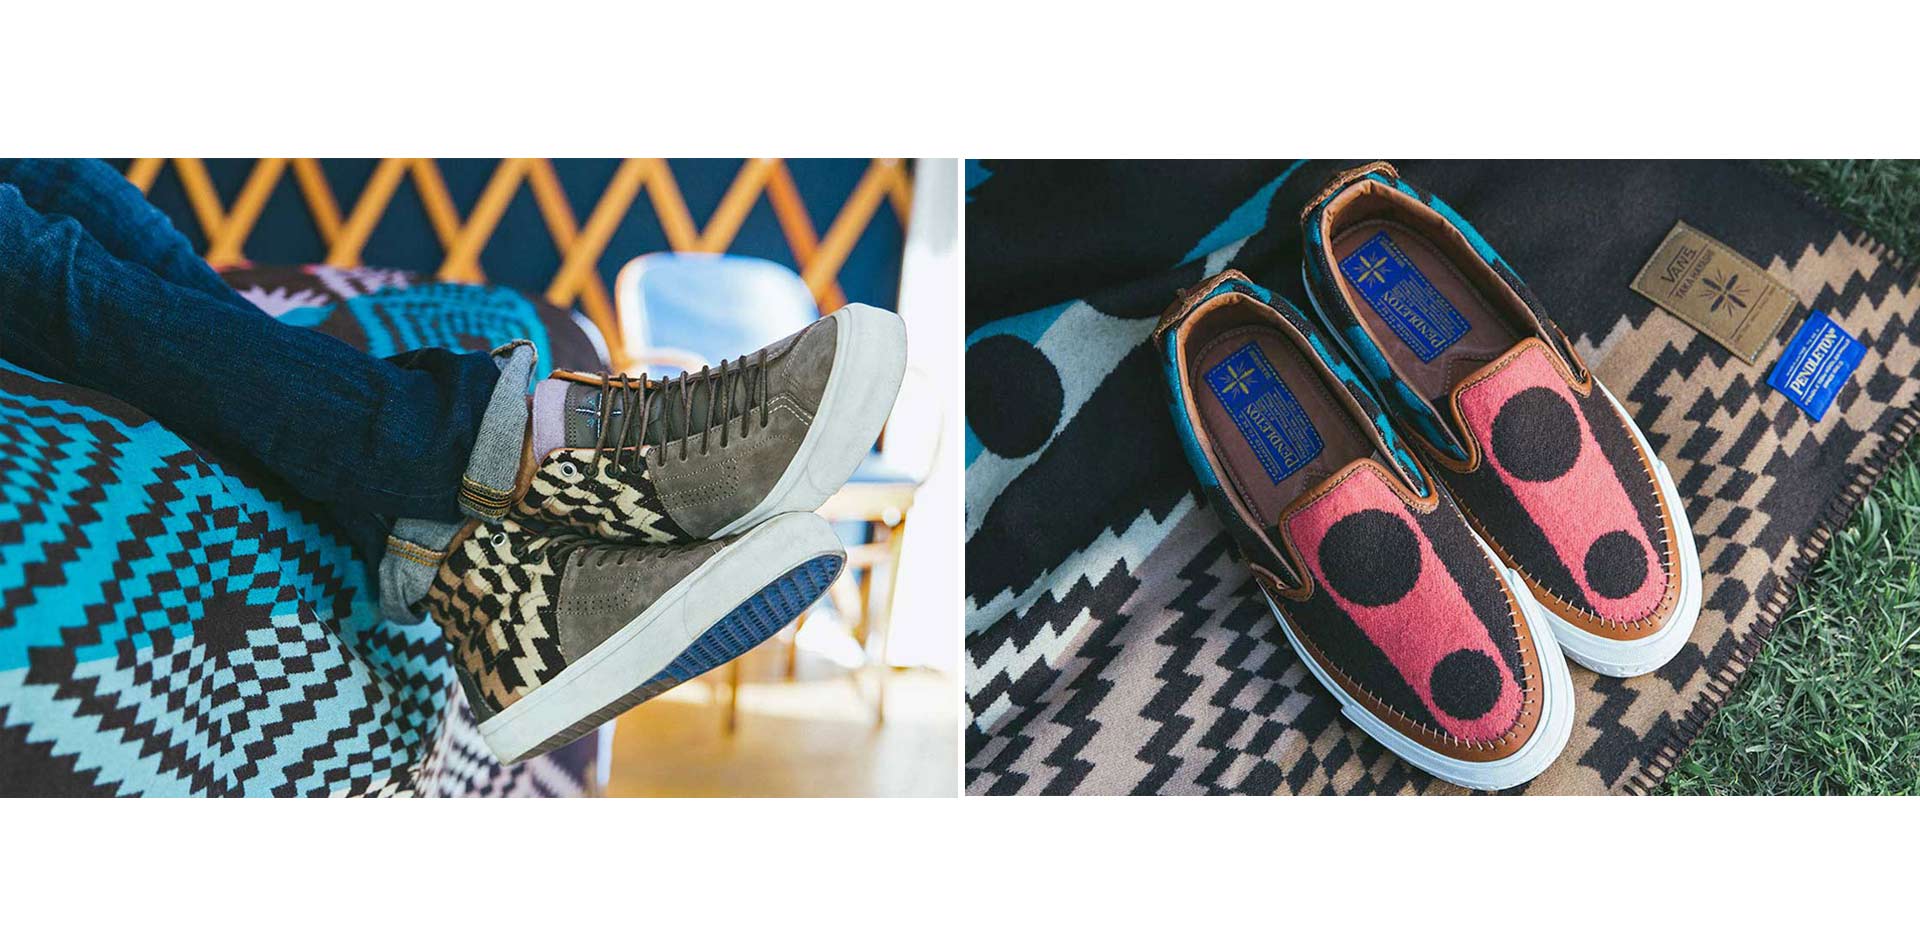 Un artista y diseñador japonés se unió a Vans para crear una colección cápsula de zapatos hermosos, cómodos y únicos